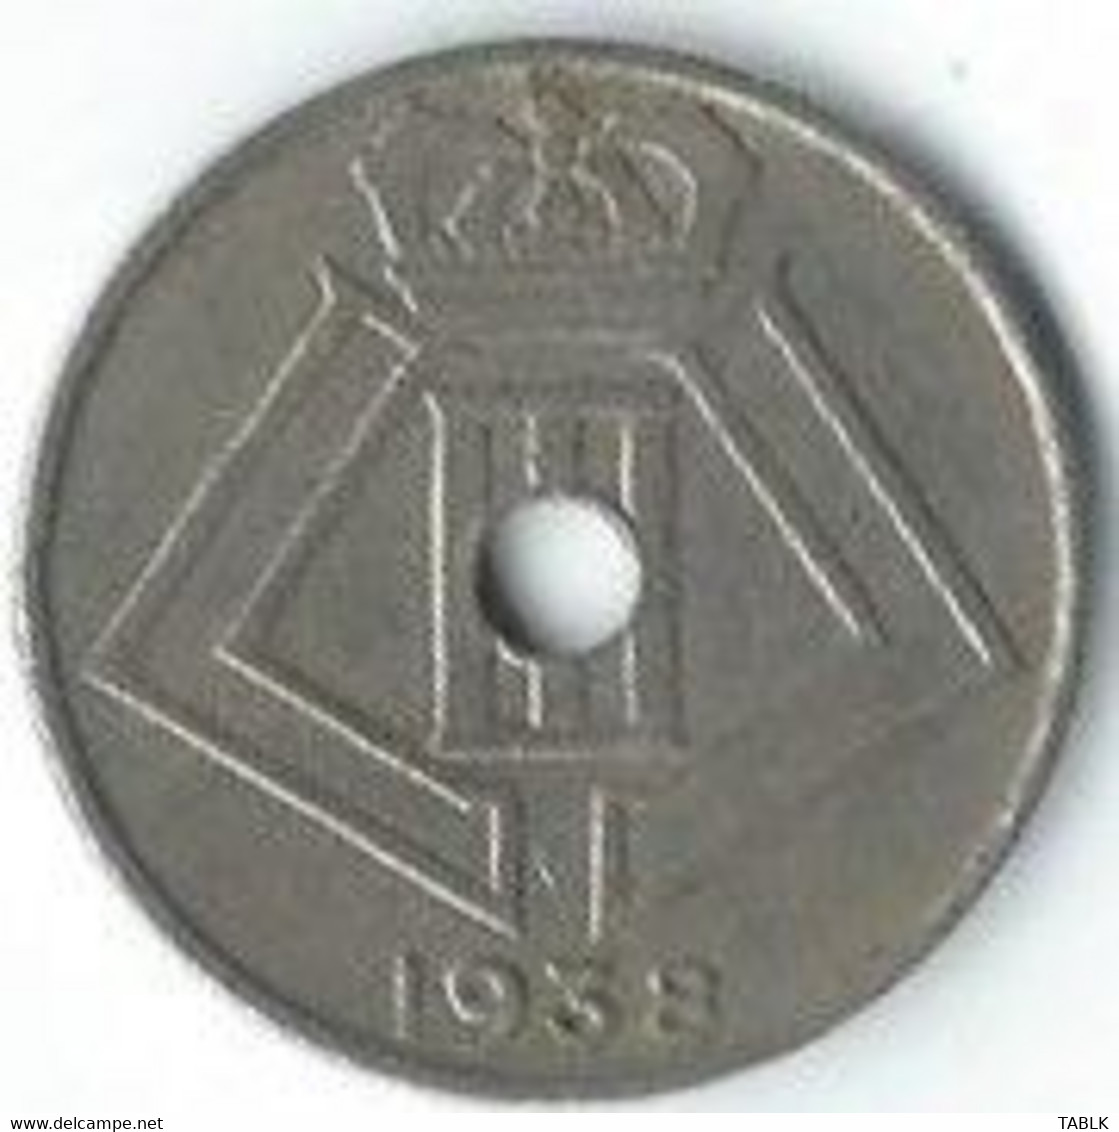 M975 - BELGIË - BELGIUM - 10 CENTIEM 1938 - 10 Centesimi